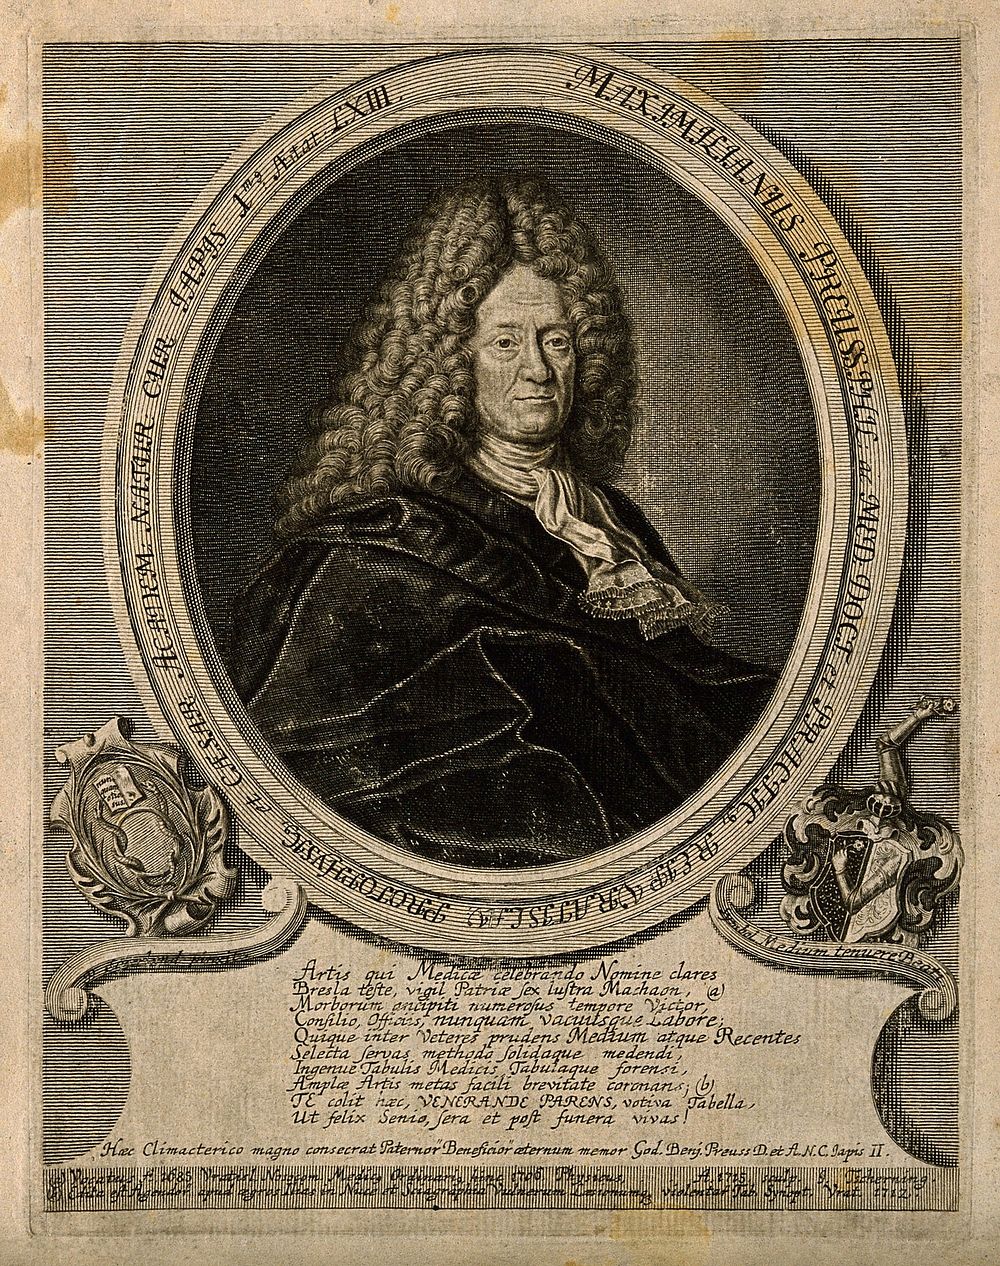 Maximilian Preuss. Line engraving by J. Tscherning, 1715, after P. Sauerland.